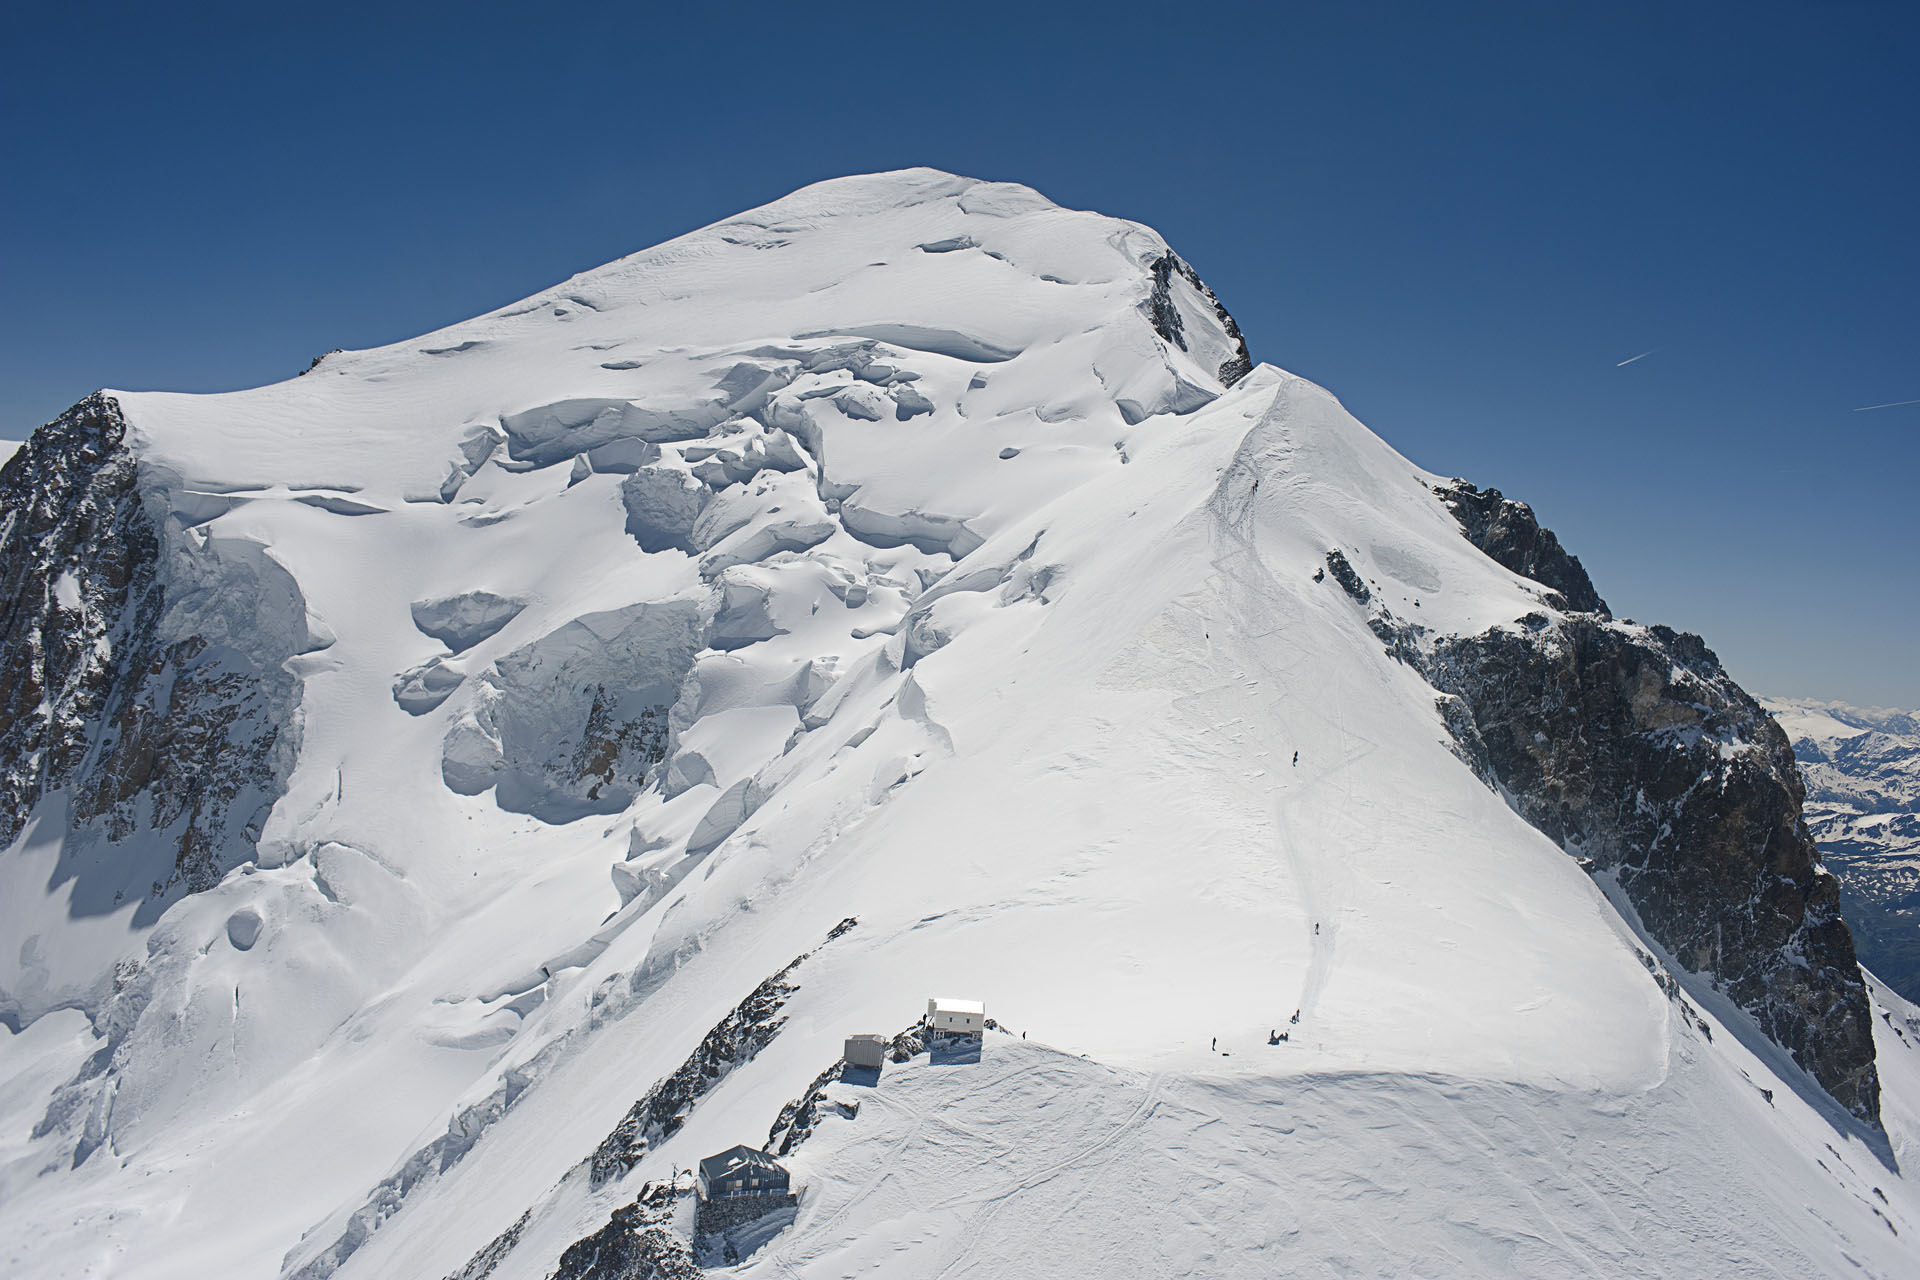  La Voie Normale de l'ascension du Mont Blanc. 

La cabane Vallo, 4362 m d'altitude (En bas de l'image) est le dernier abri ( non gardé) avant e sommet ( en haut de l'image) du Mont Blanc à 4810 m d'altitude. En été, les missions de secours du PGHM d